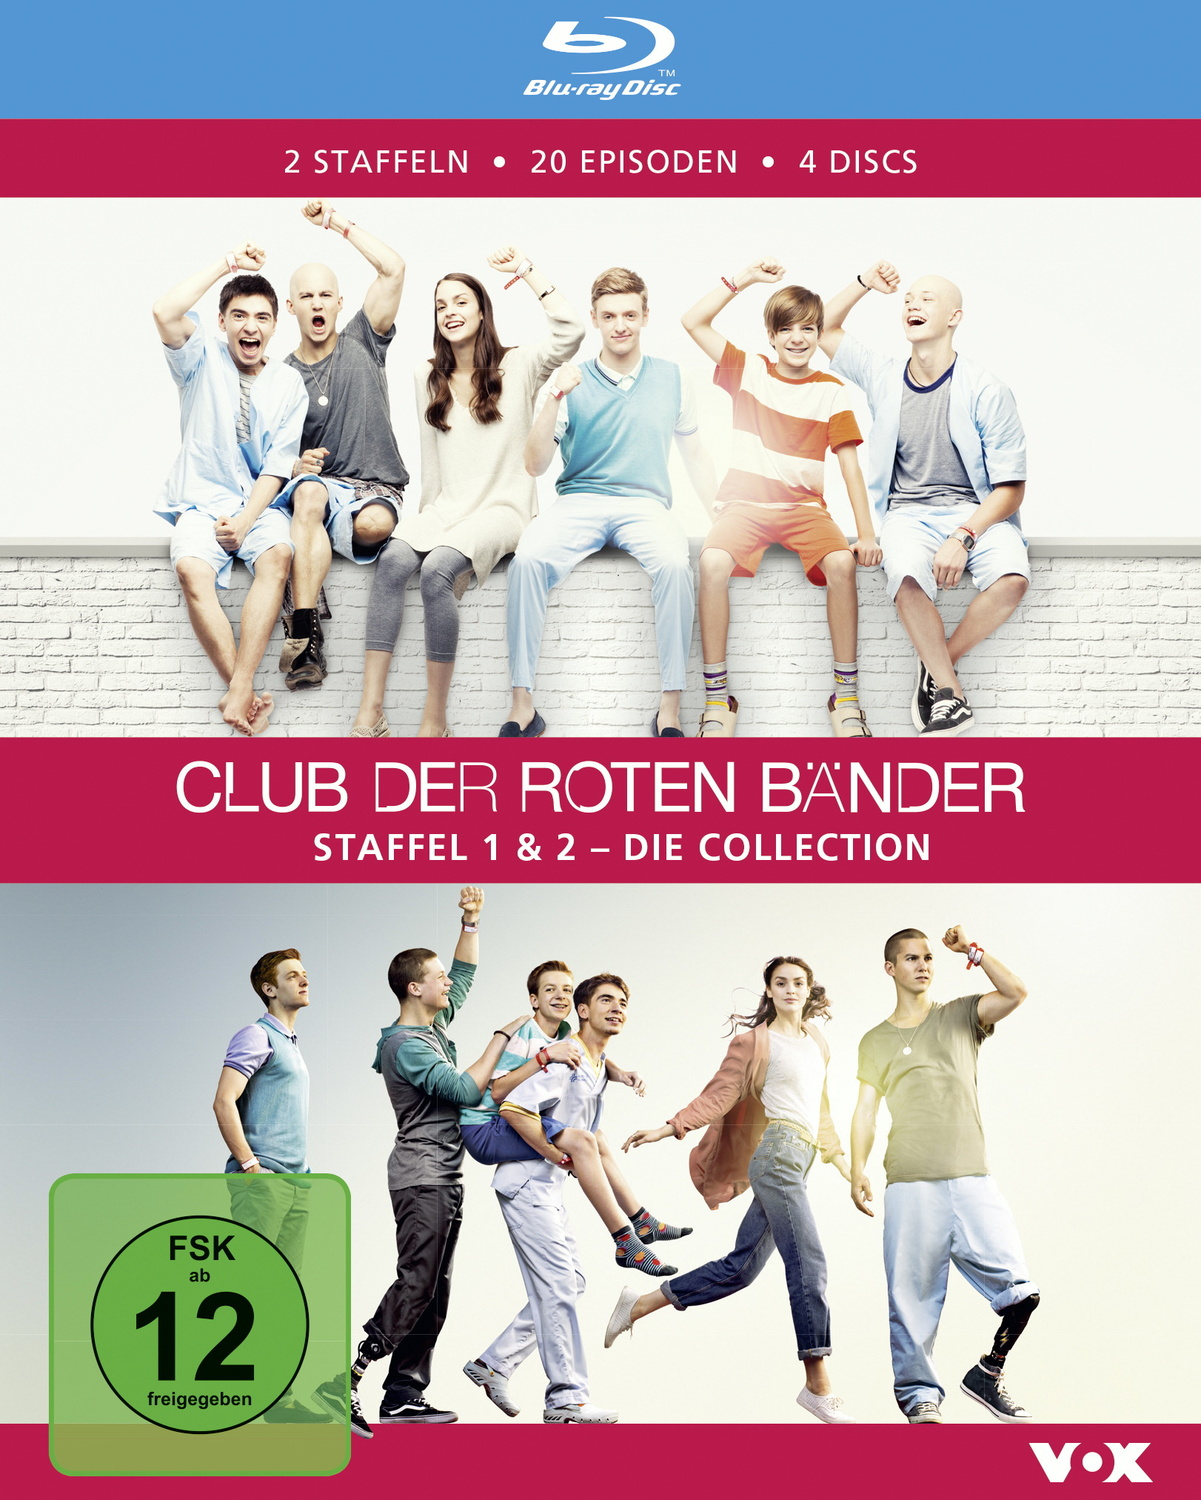 Die Bänder, Club Collection roten Staffel 1 Blu-ray & der (4 Discs) - 2